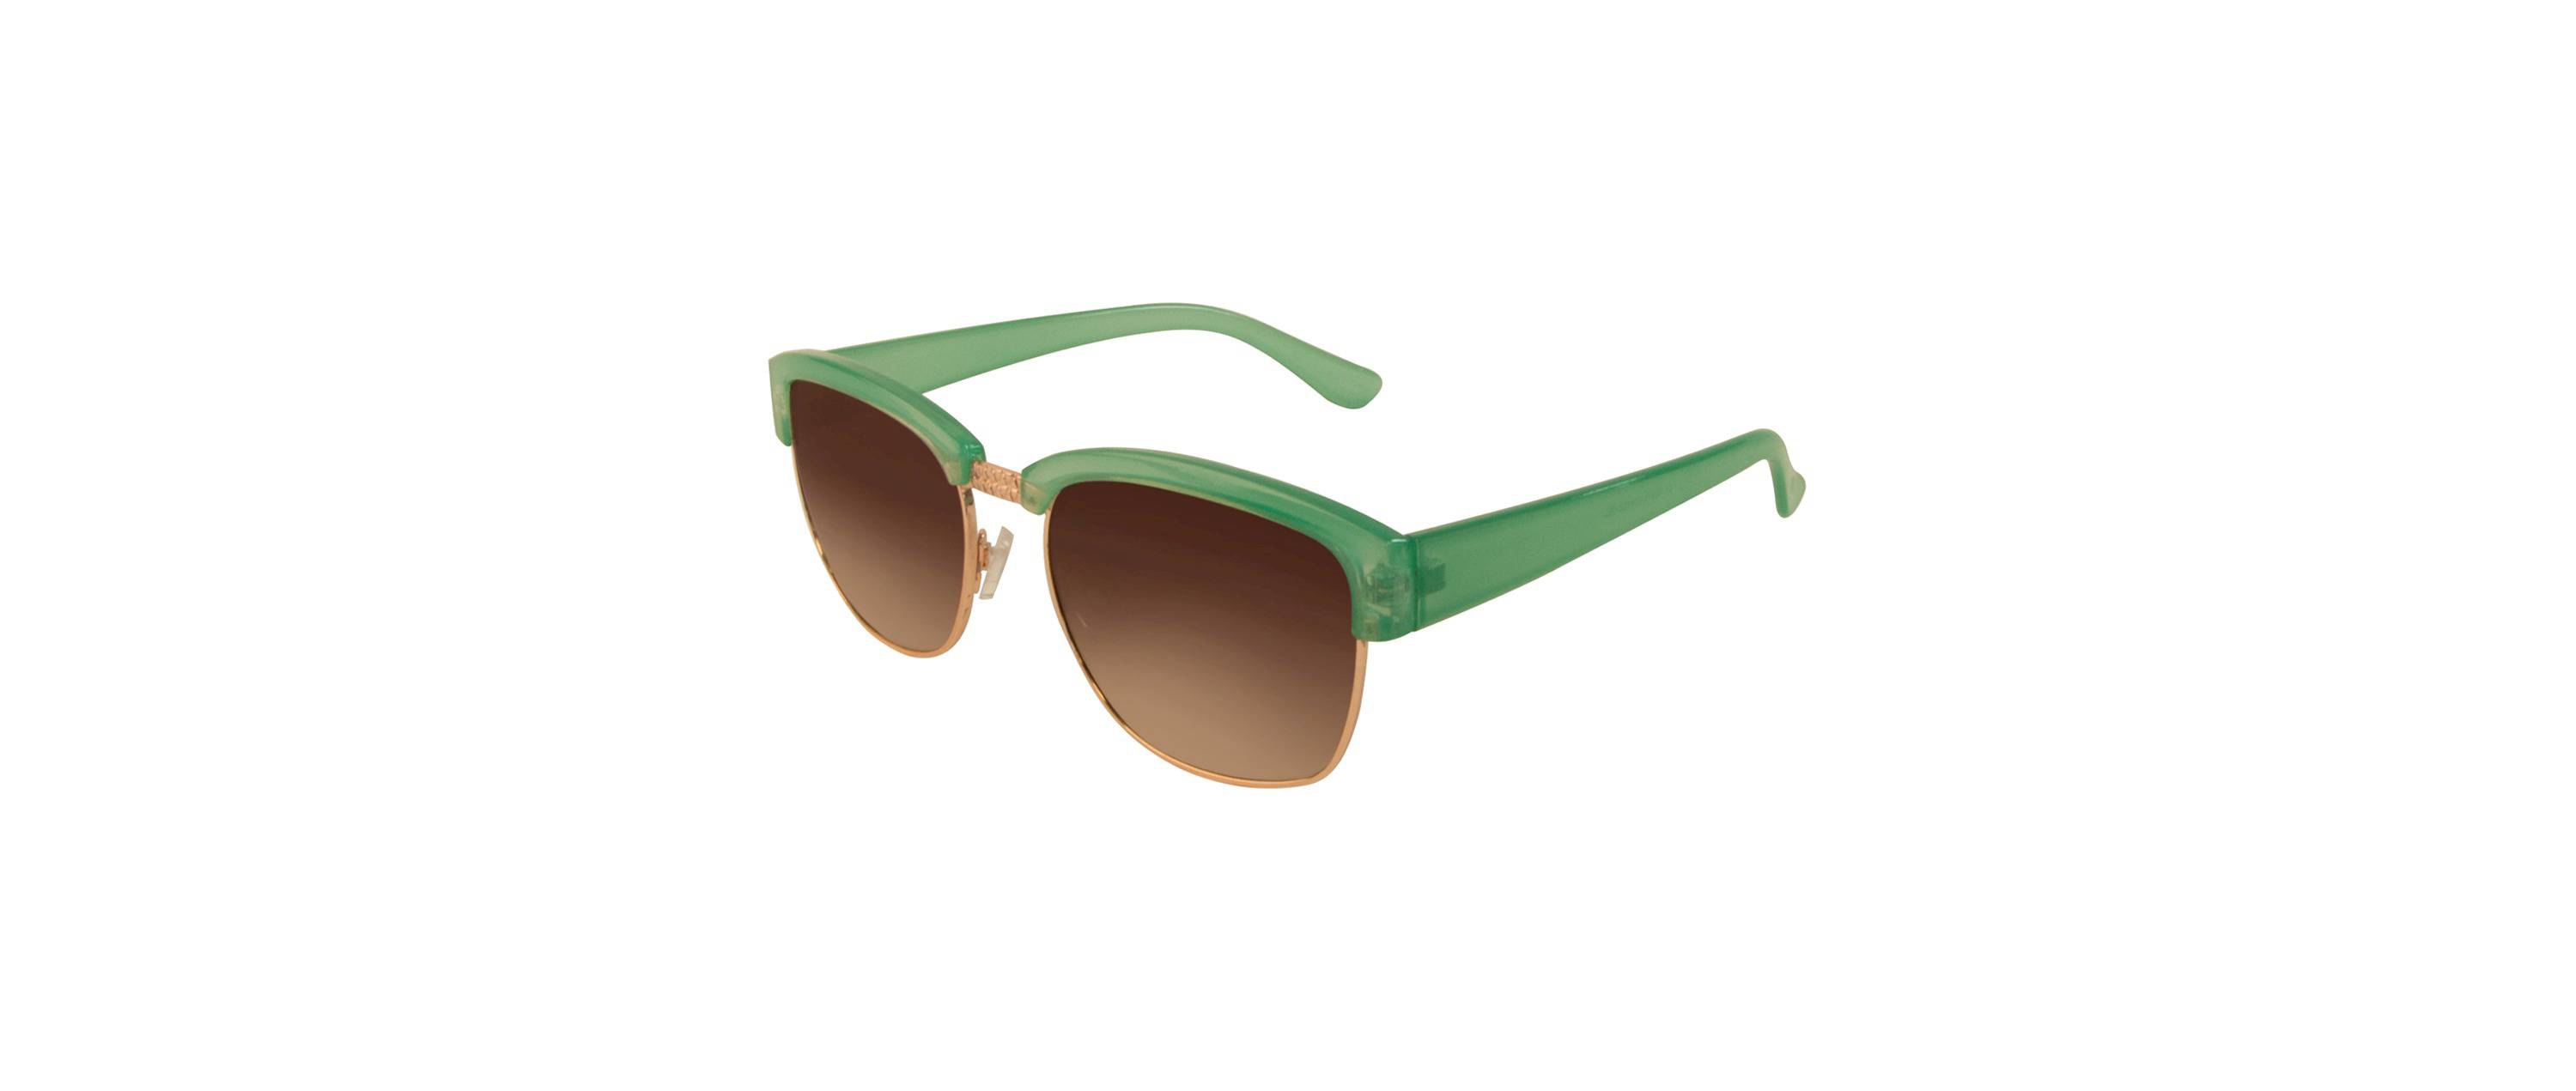 Retro Green and Gold Sunglasses